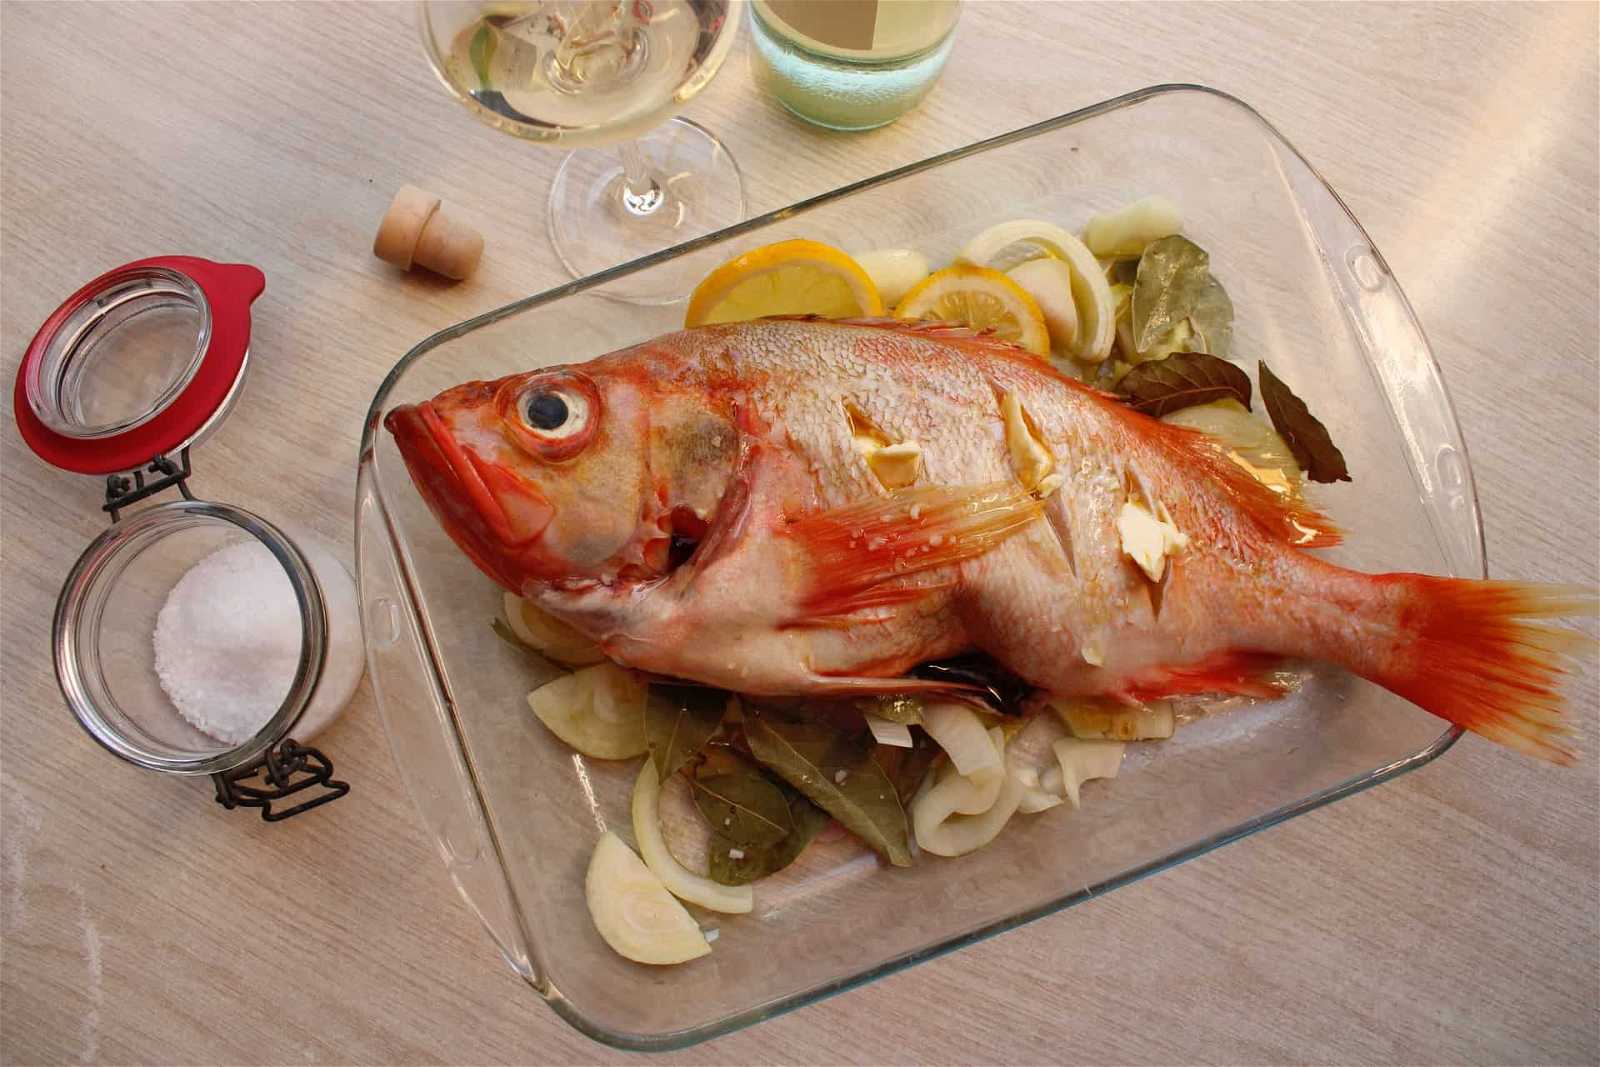 جدول كيتو دايت PDF الخاص بنا يتكون من هذه الأكلات اللذيذة والعديدة منها الأسماك و الأجبان و المكسرات.